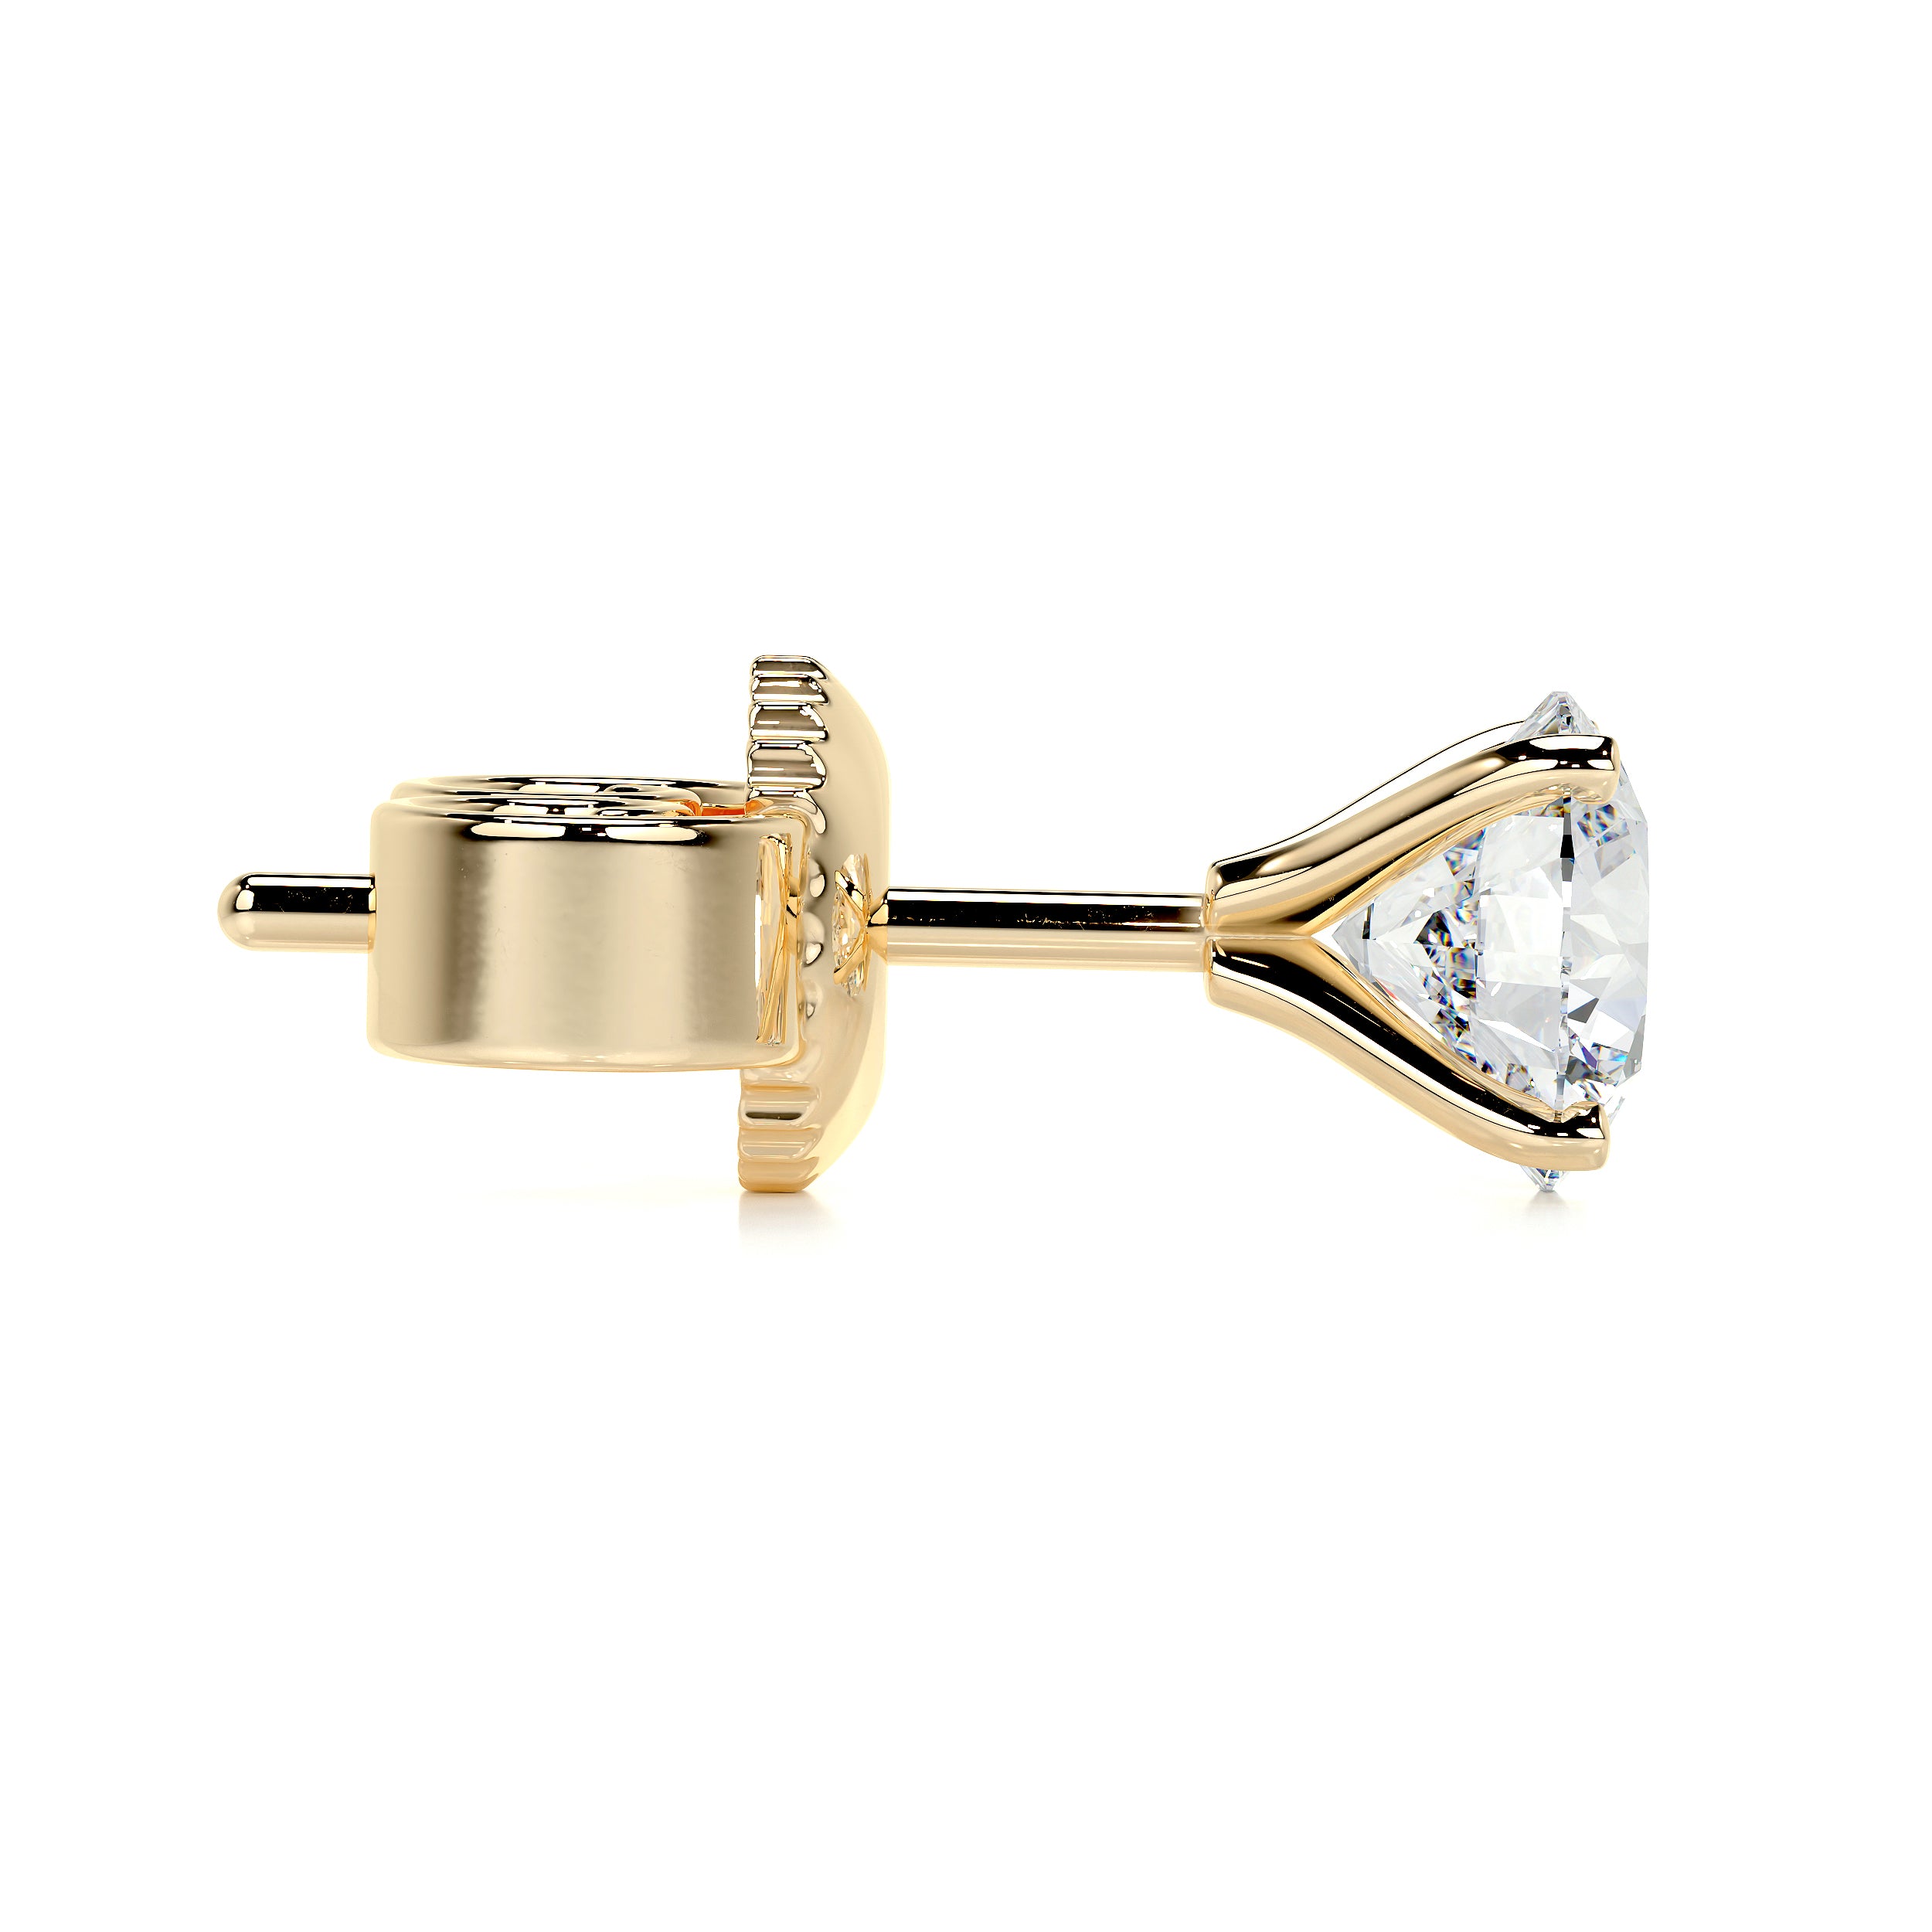 Allen Lab Grown Diamond Earrings -18K Yellow Gold